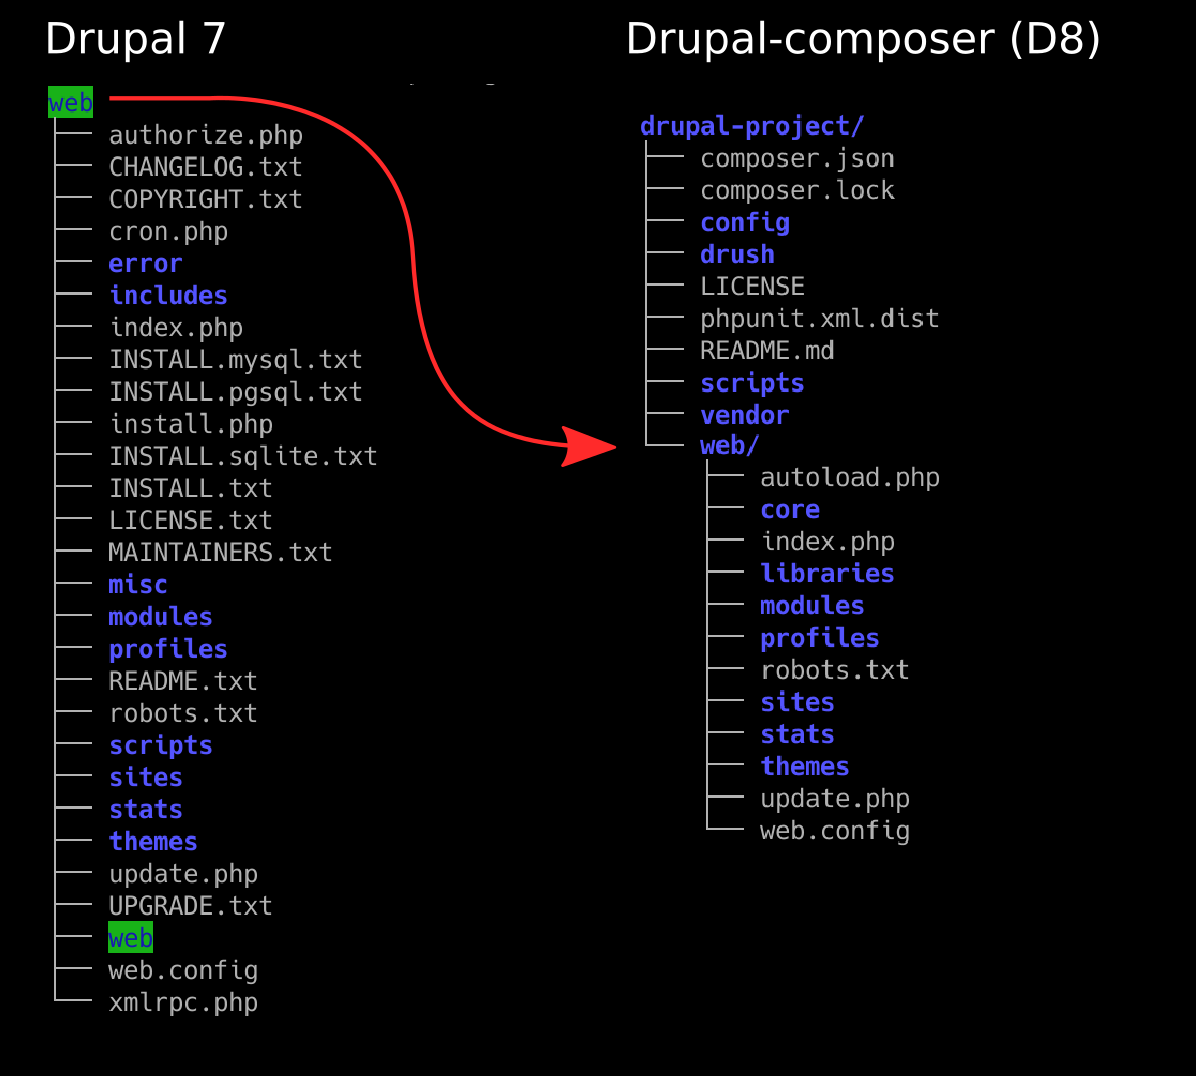 Drupal 7 structure vs Drupal 8 (with drupal-composer) structure